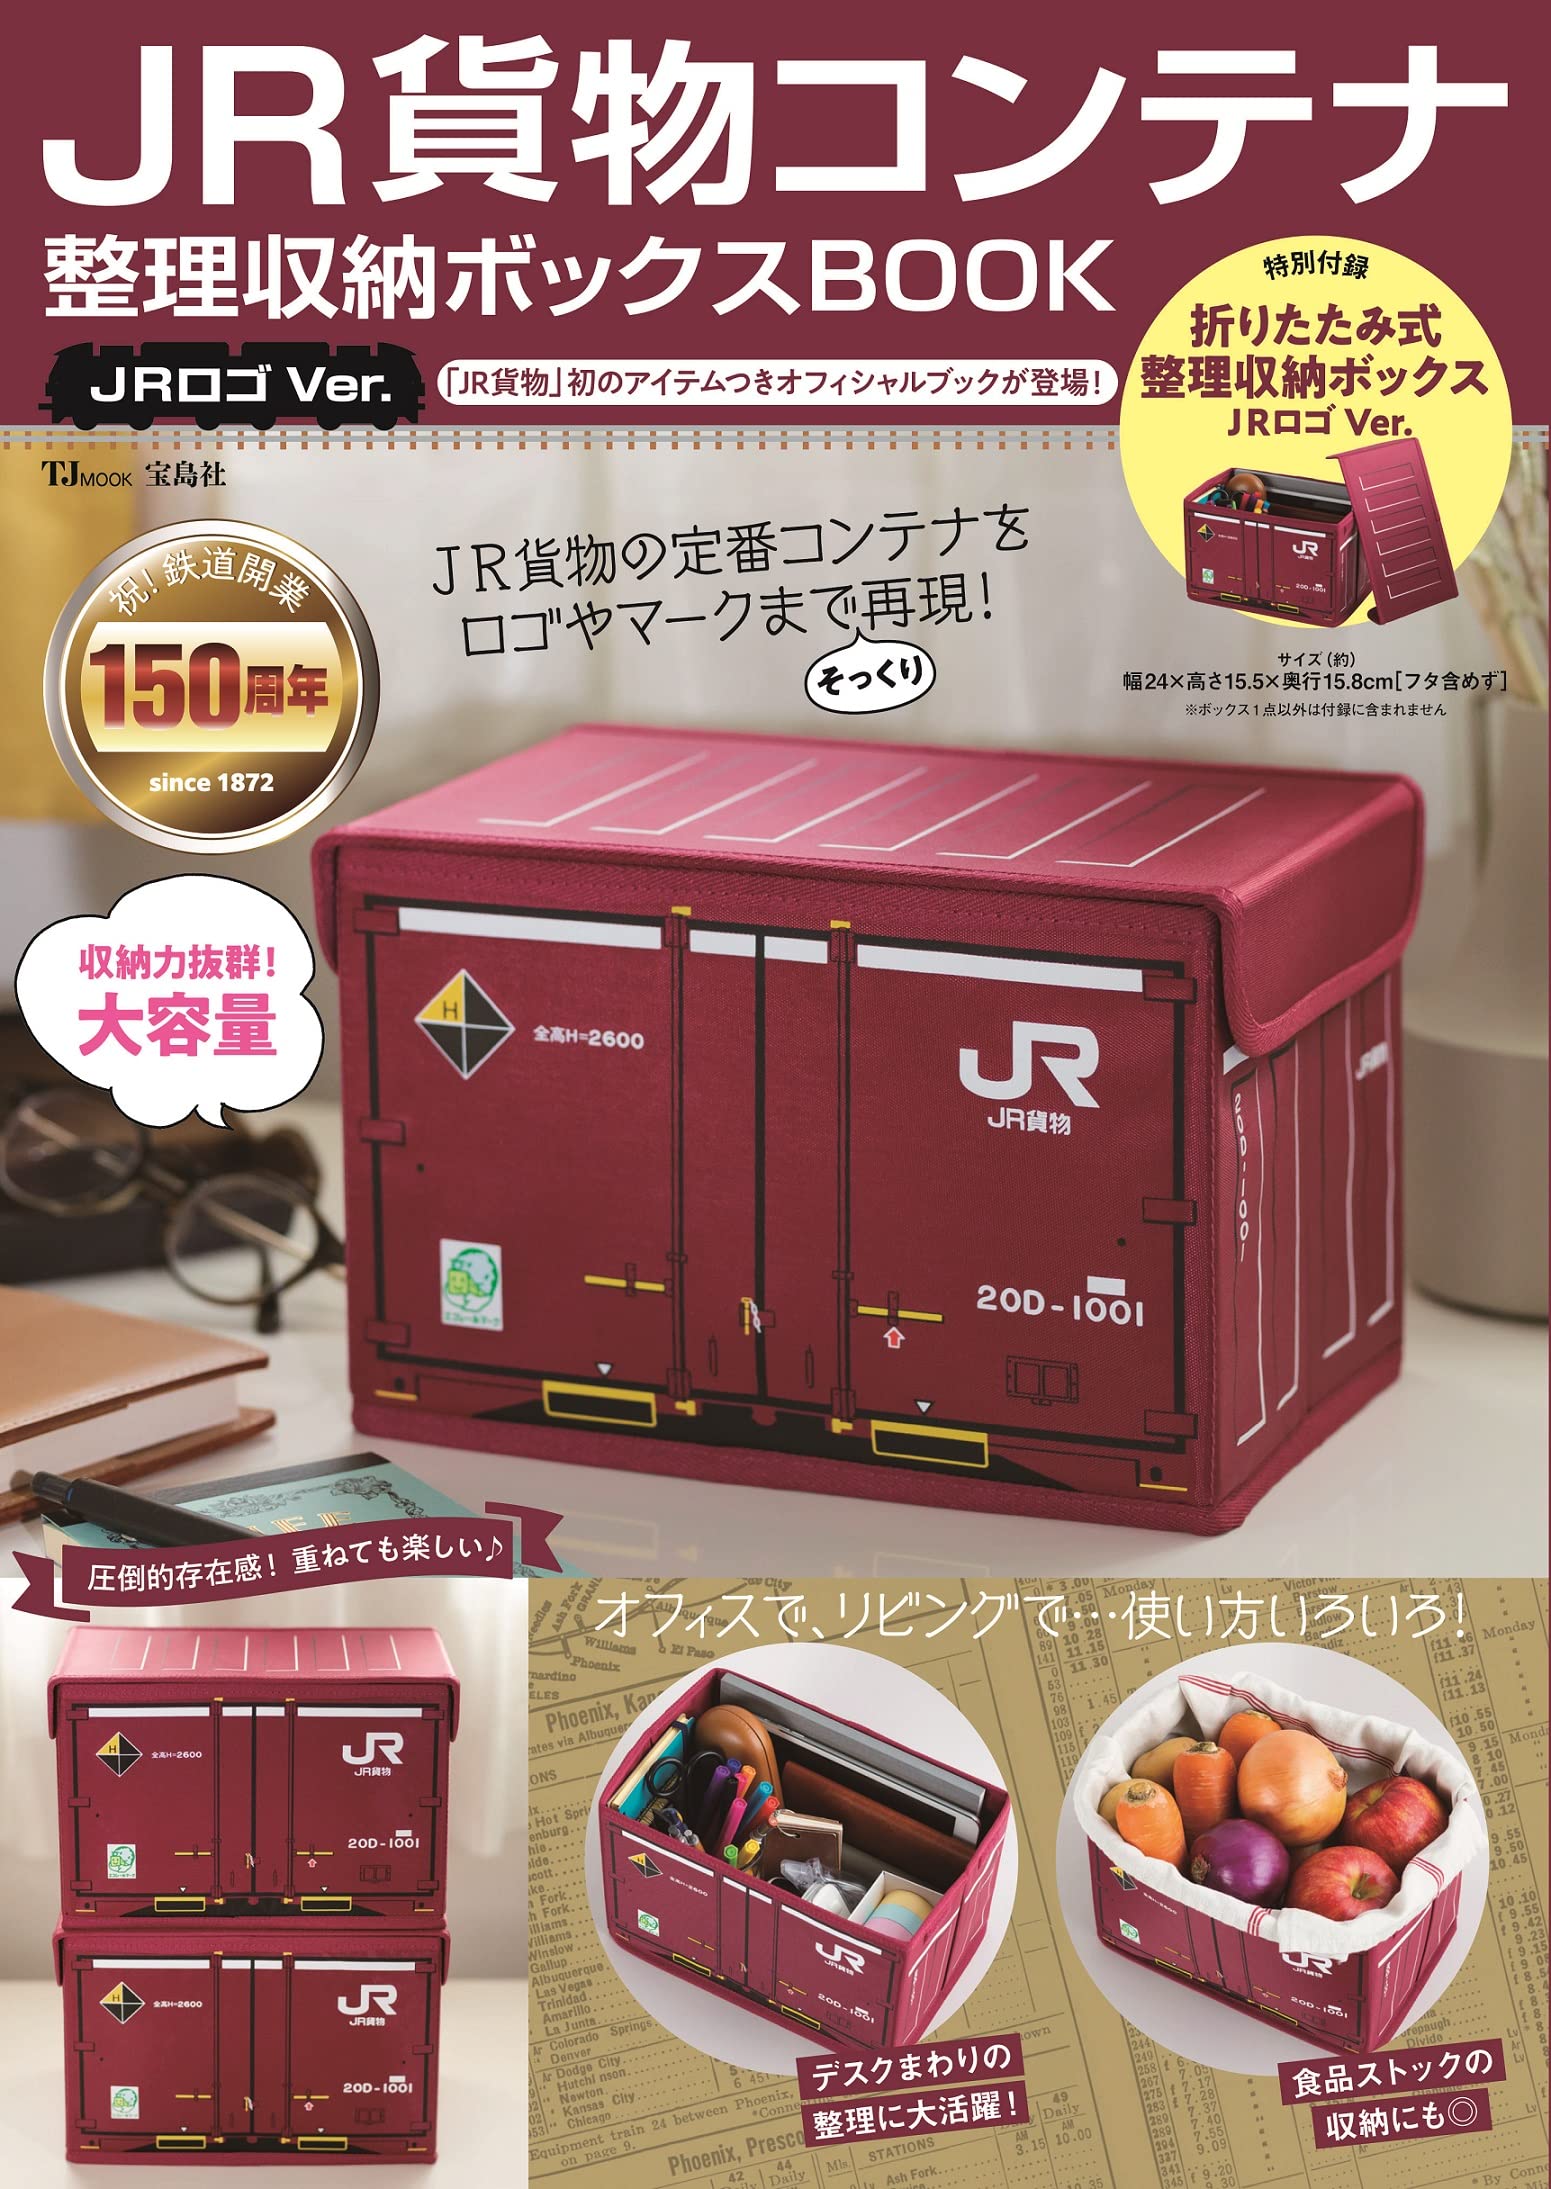 JR貨物コンテナ 整理收納ボックスBOOK JRロゴVer. (TJMOOK)